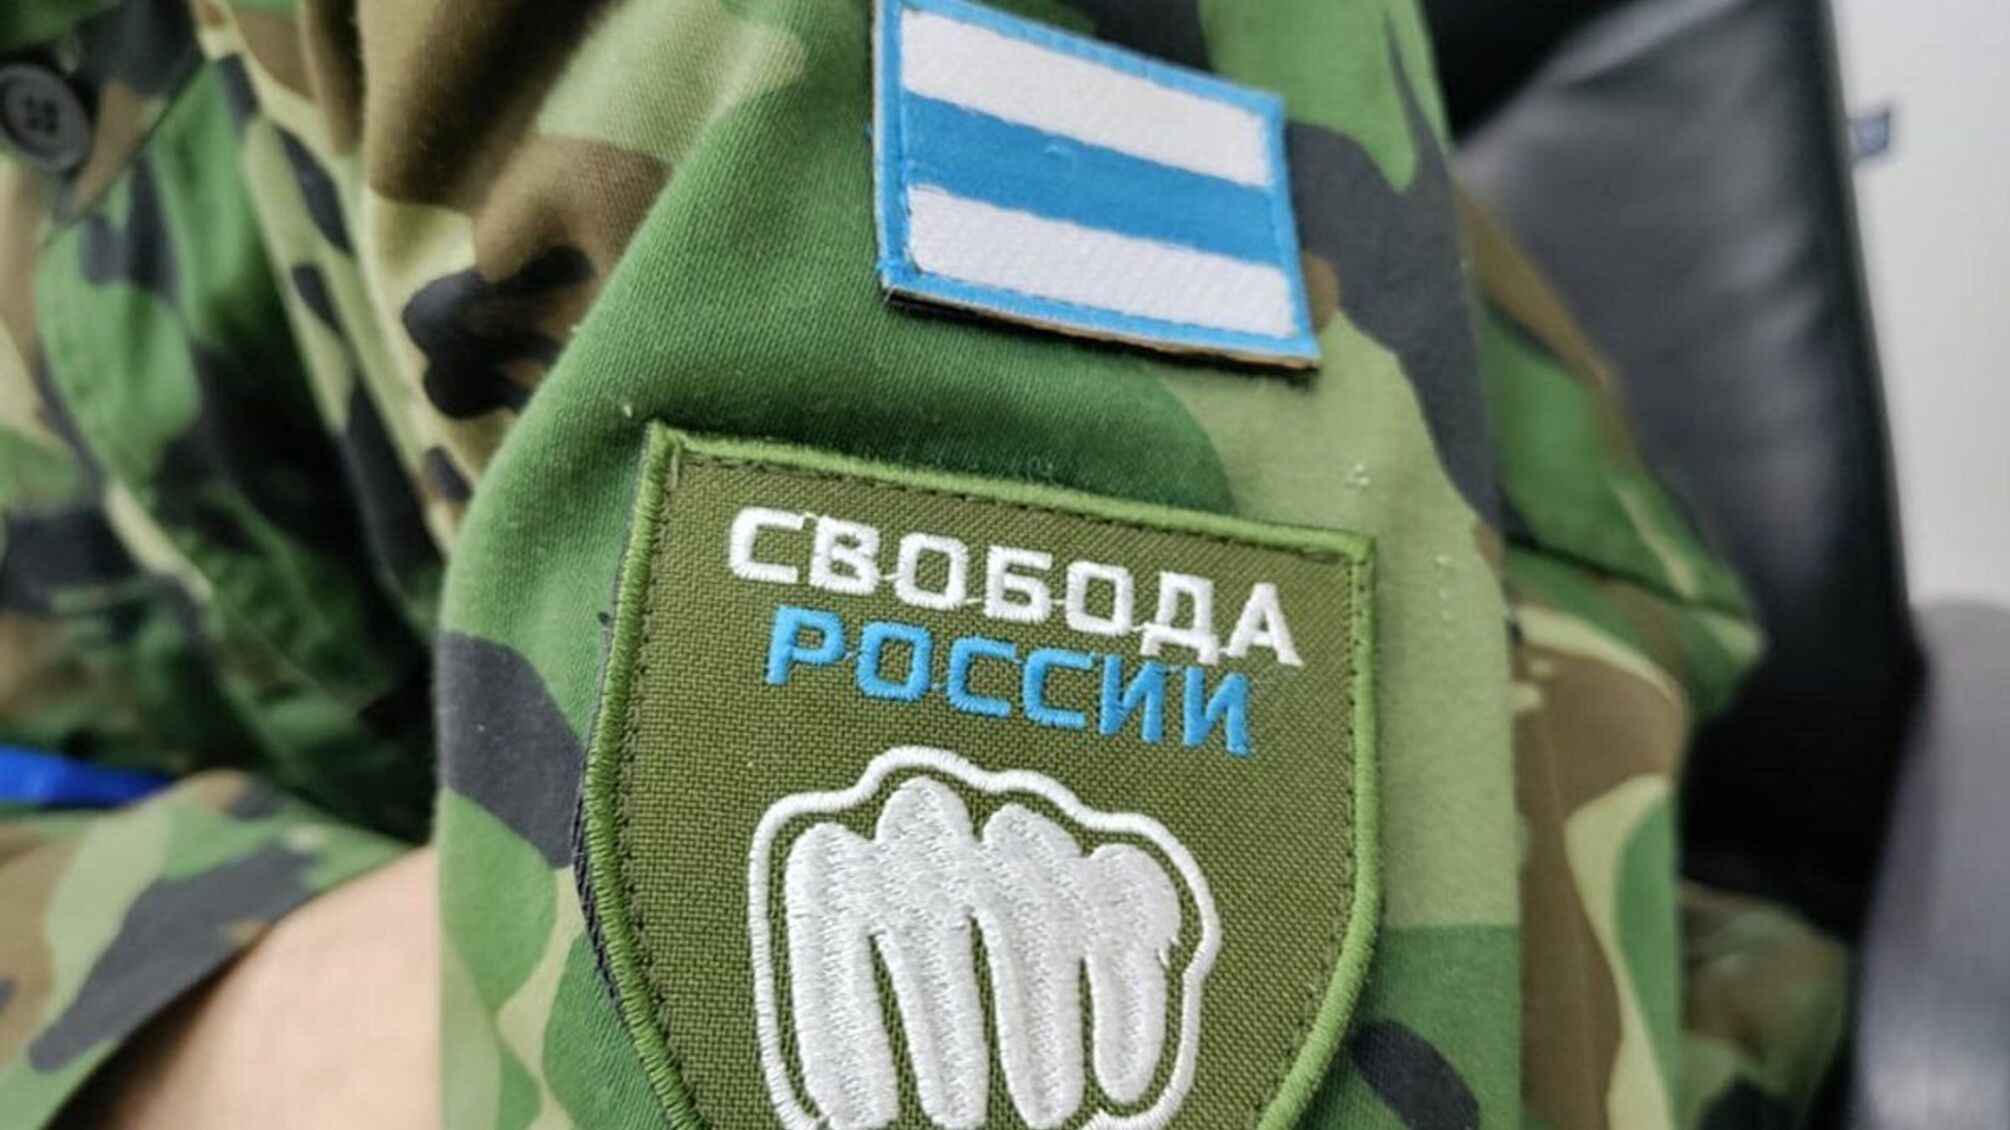 ЗСУ пришвидшить процес перевірки кандидатів в легіон 'Свобода росії'